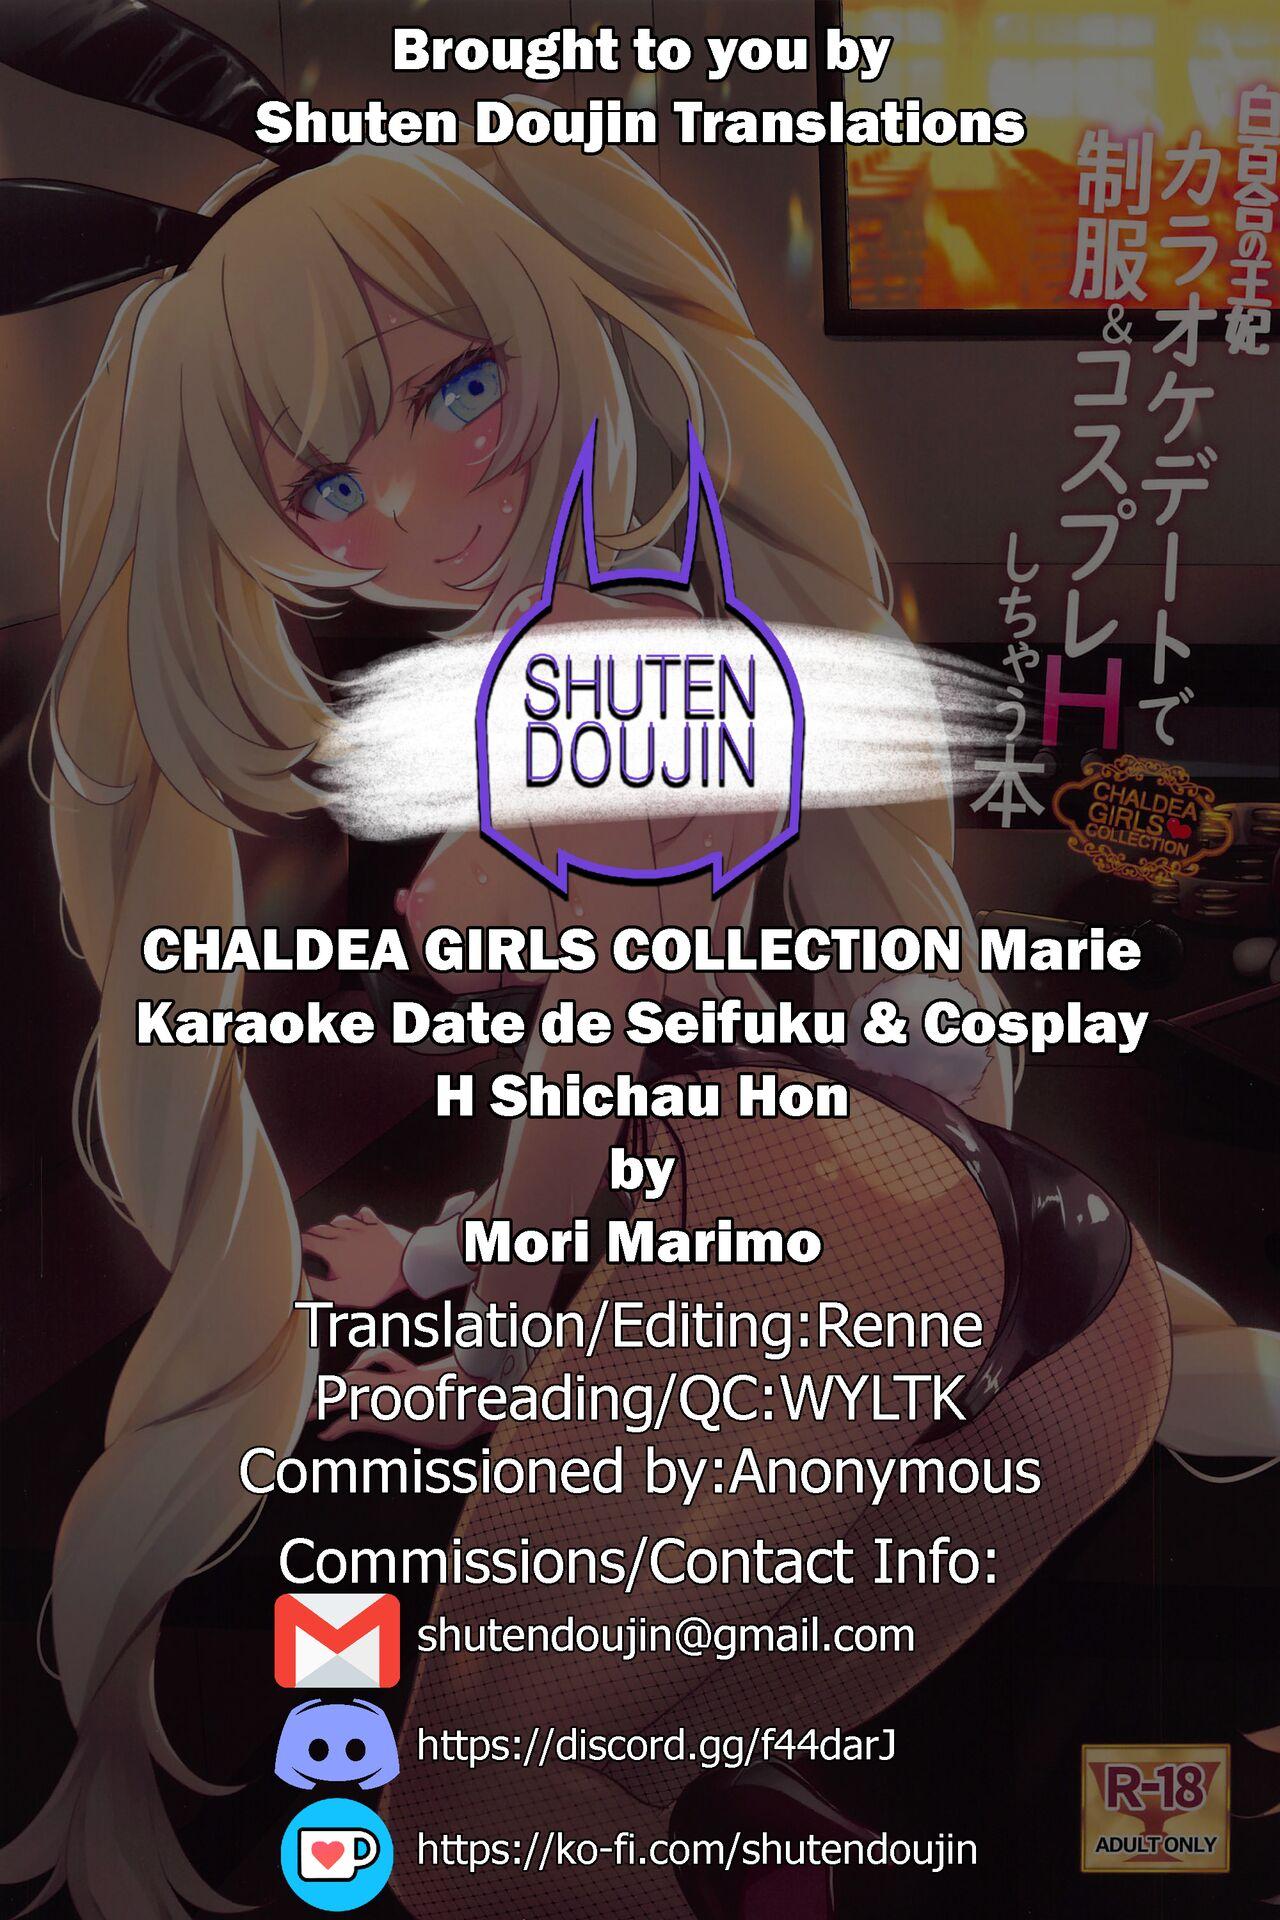 CHALDEA GIRLS COLLECTION Marie Karaoke Date de Seifuku & Cosplay H Shichau Hon 26